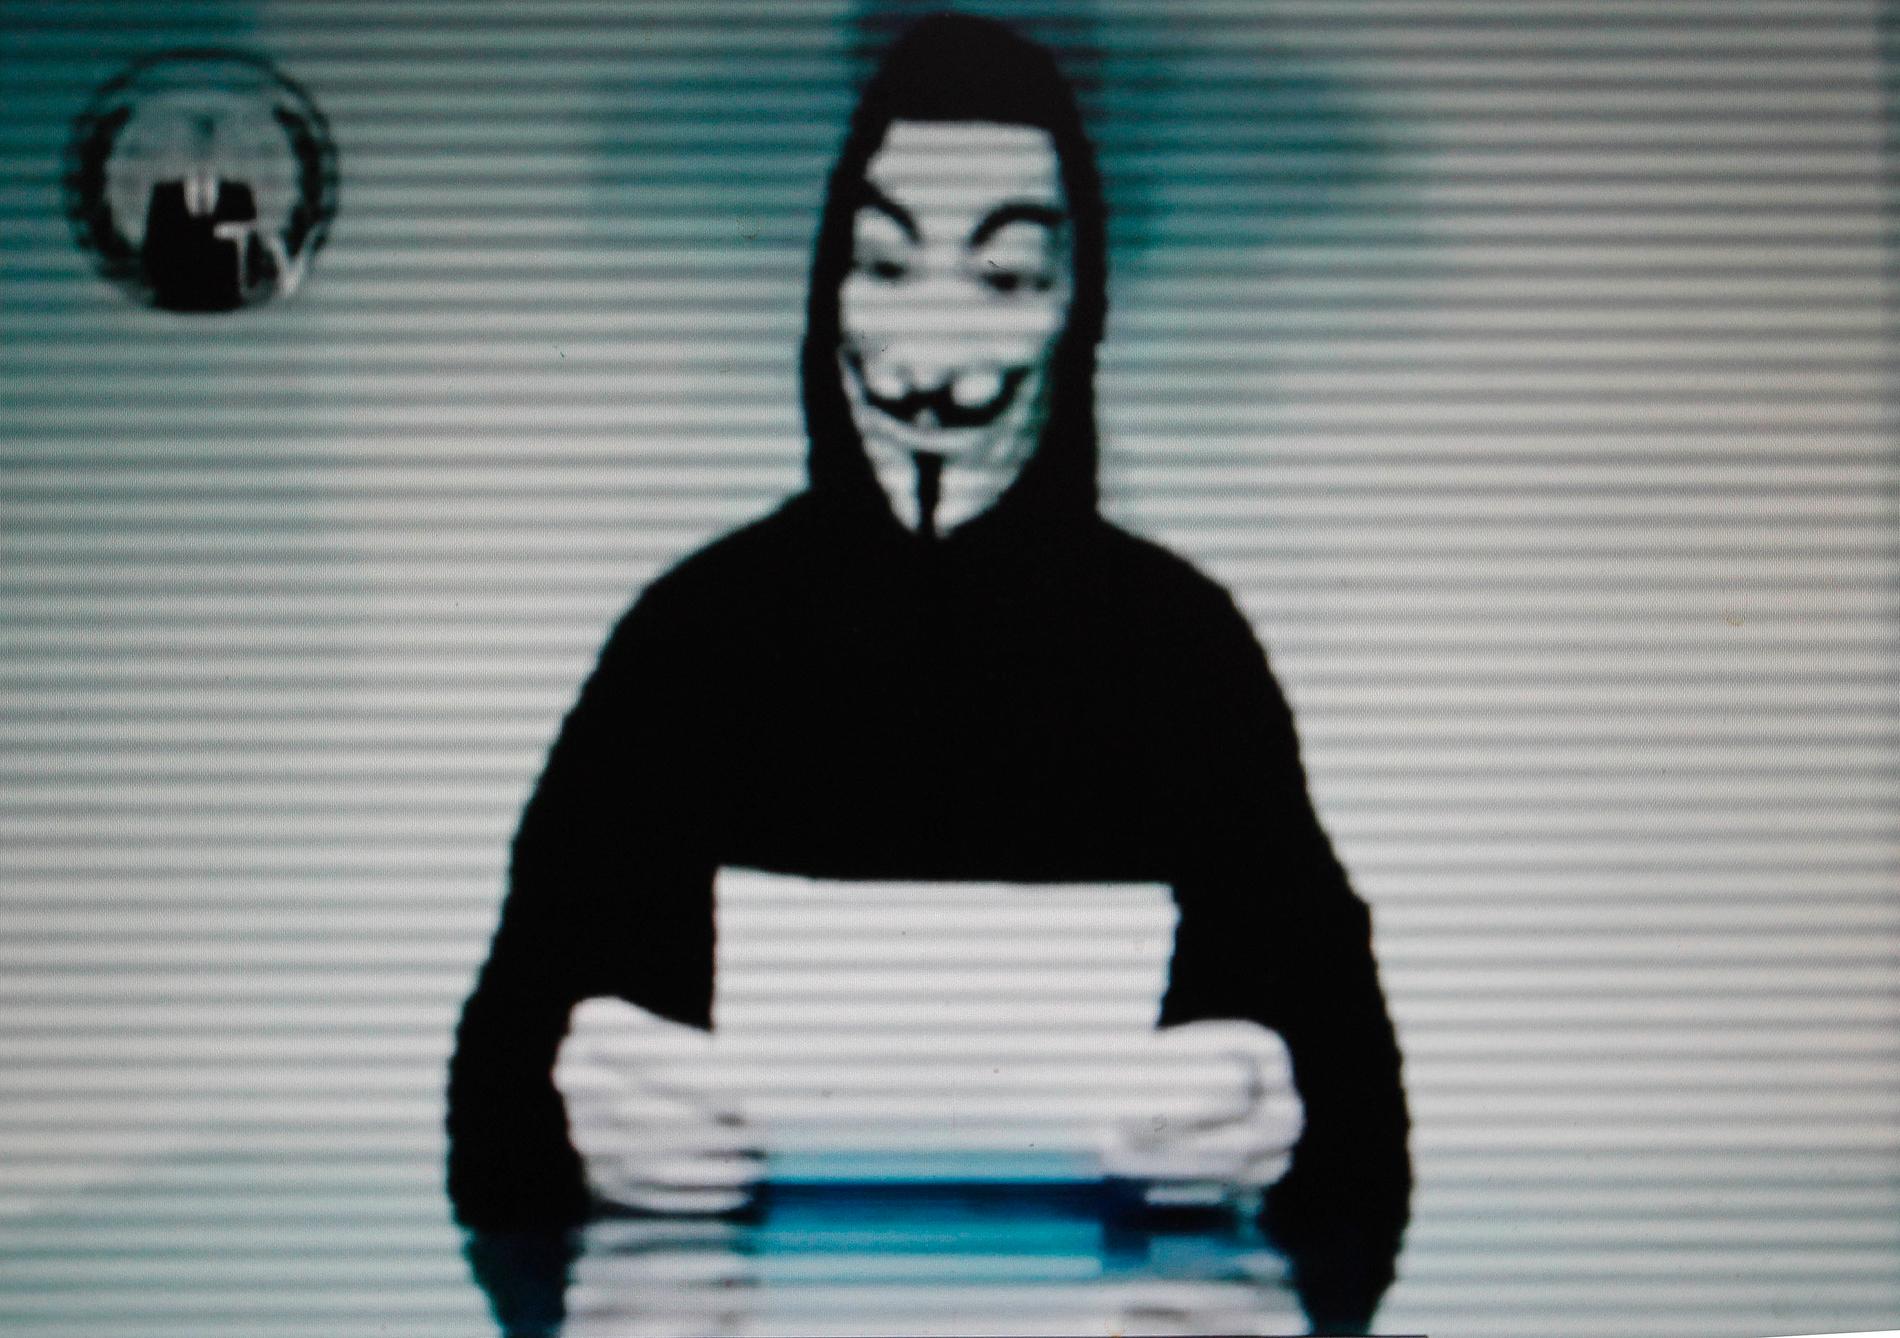 Arkivbild. Anonymouse har tidigare kommunicerat sin olika aktioner med filmer på en person i mask som läser upp budskap.